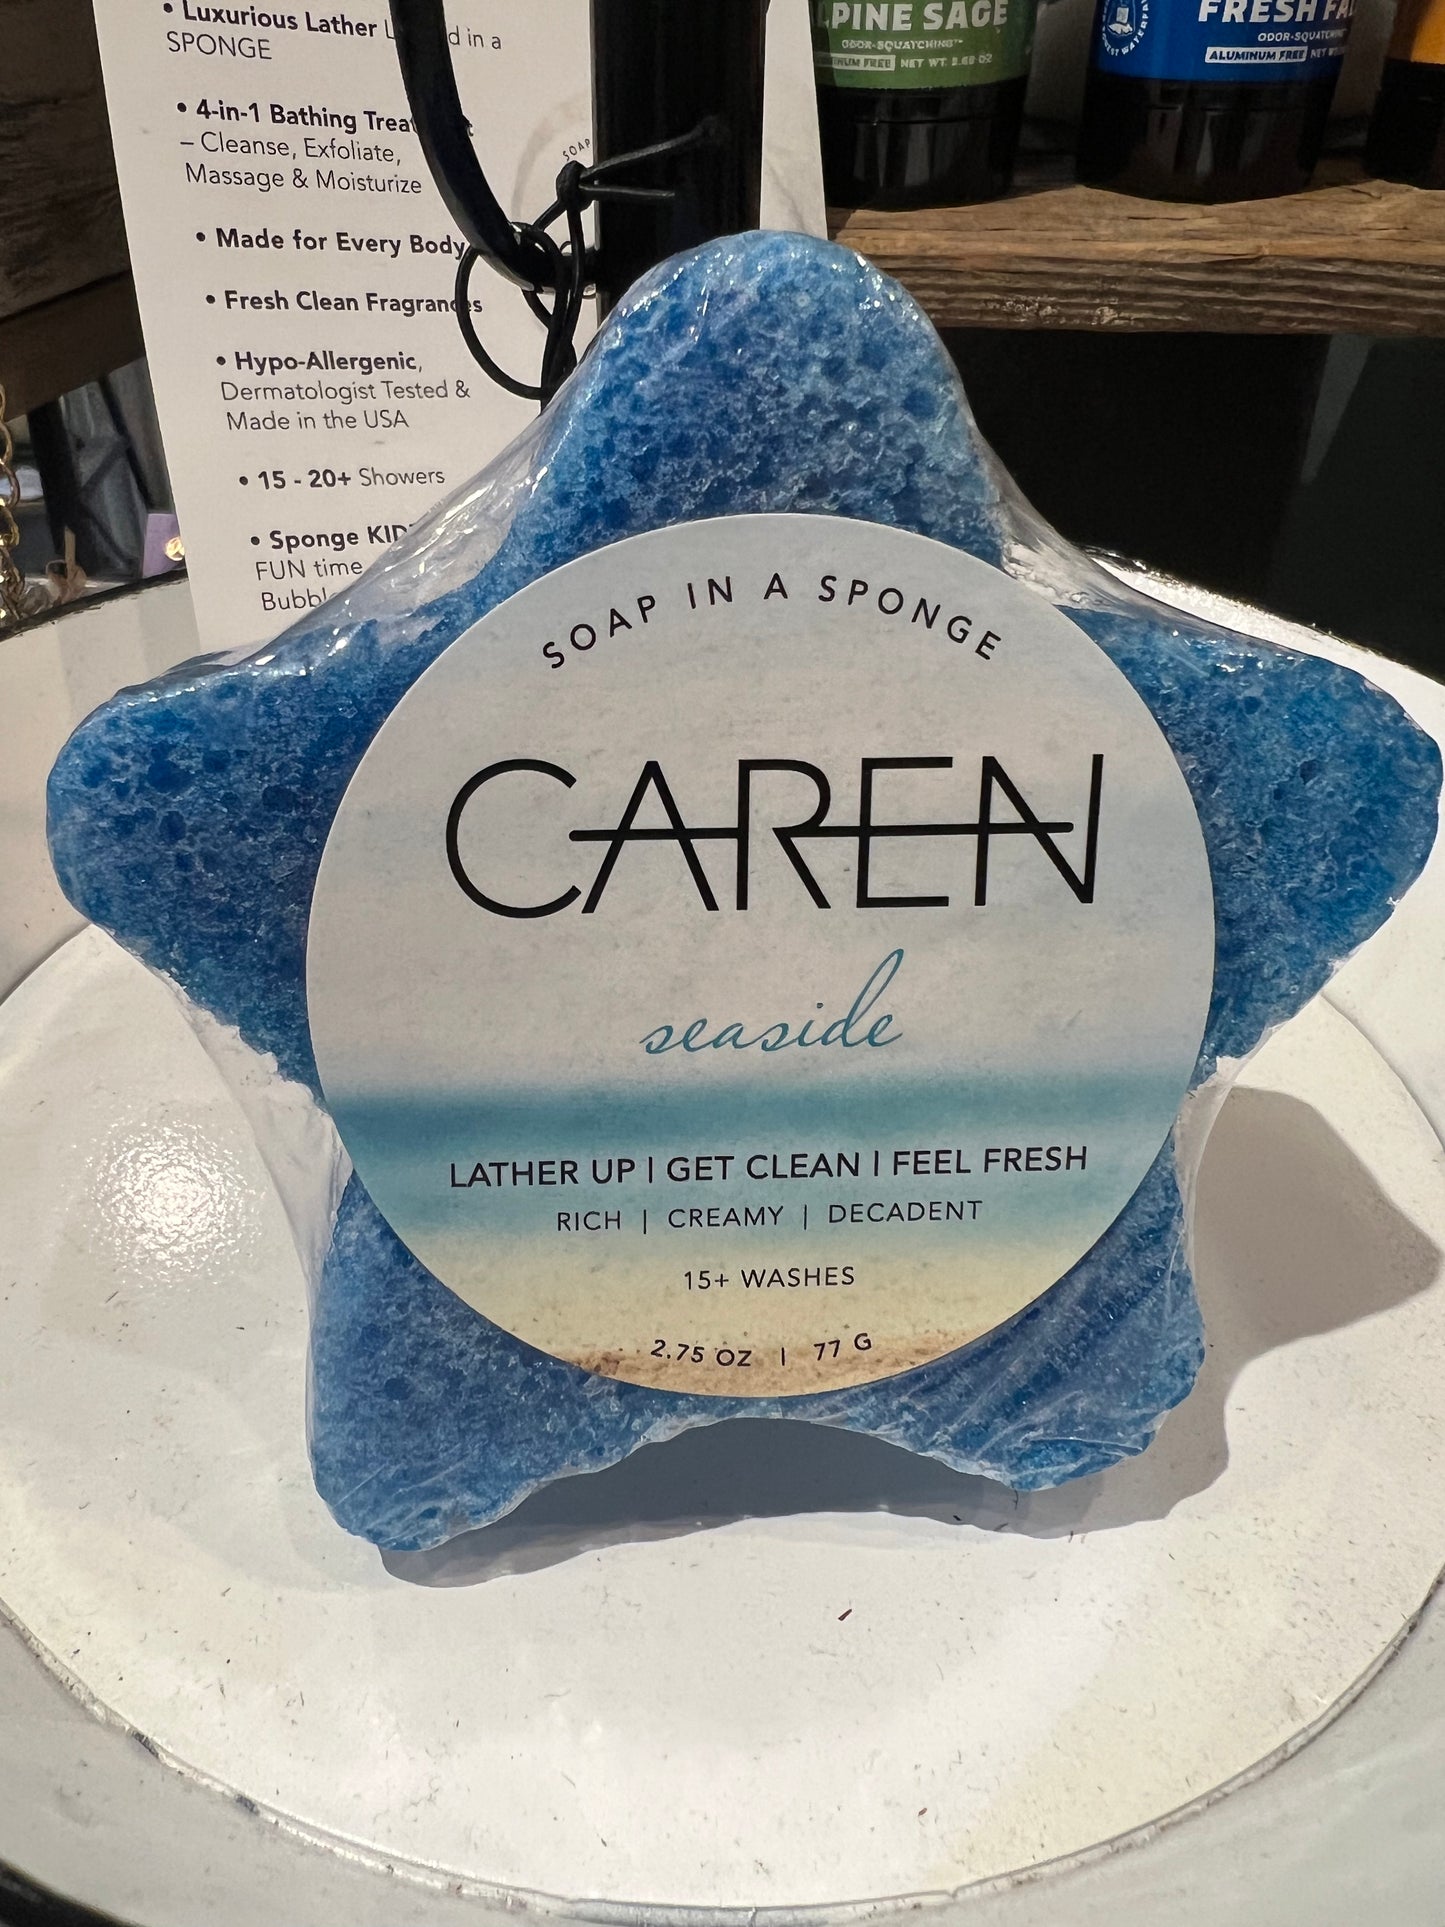 Caren "Seaside" soap sponge shaped like a blue star.